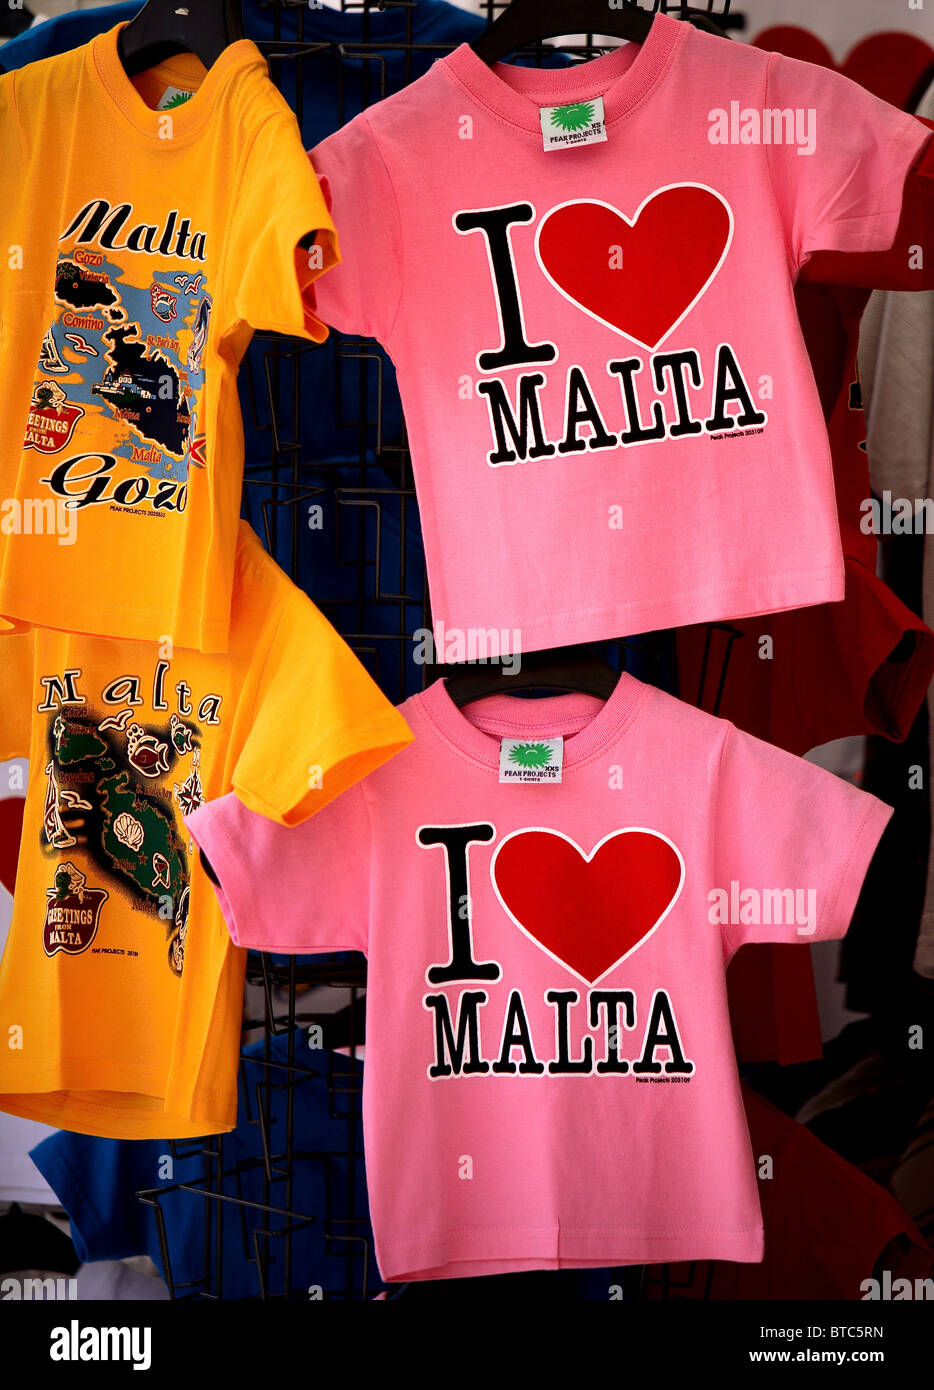 souvenirs of Malta Stock Photo